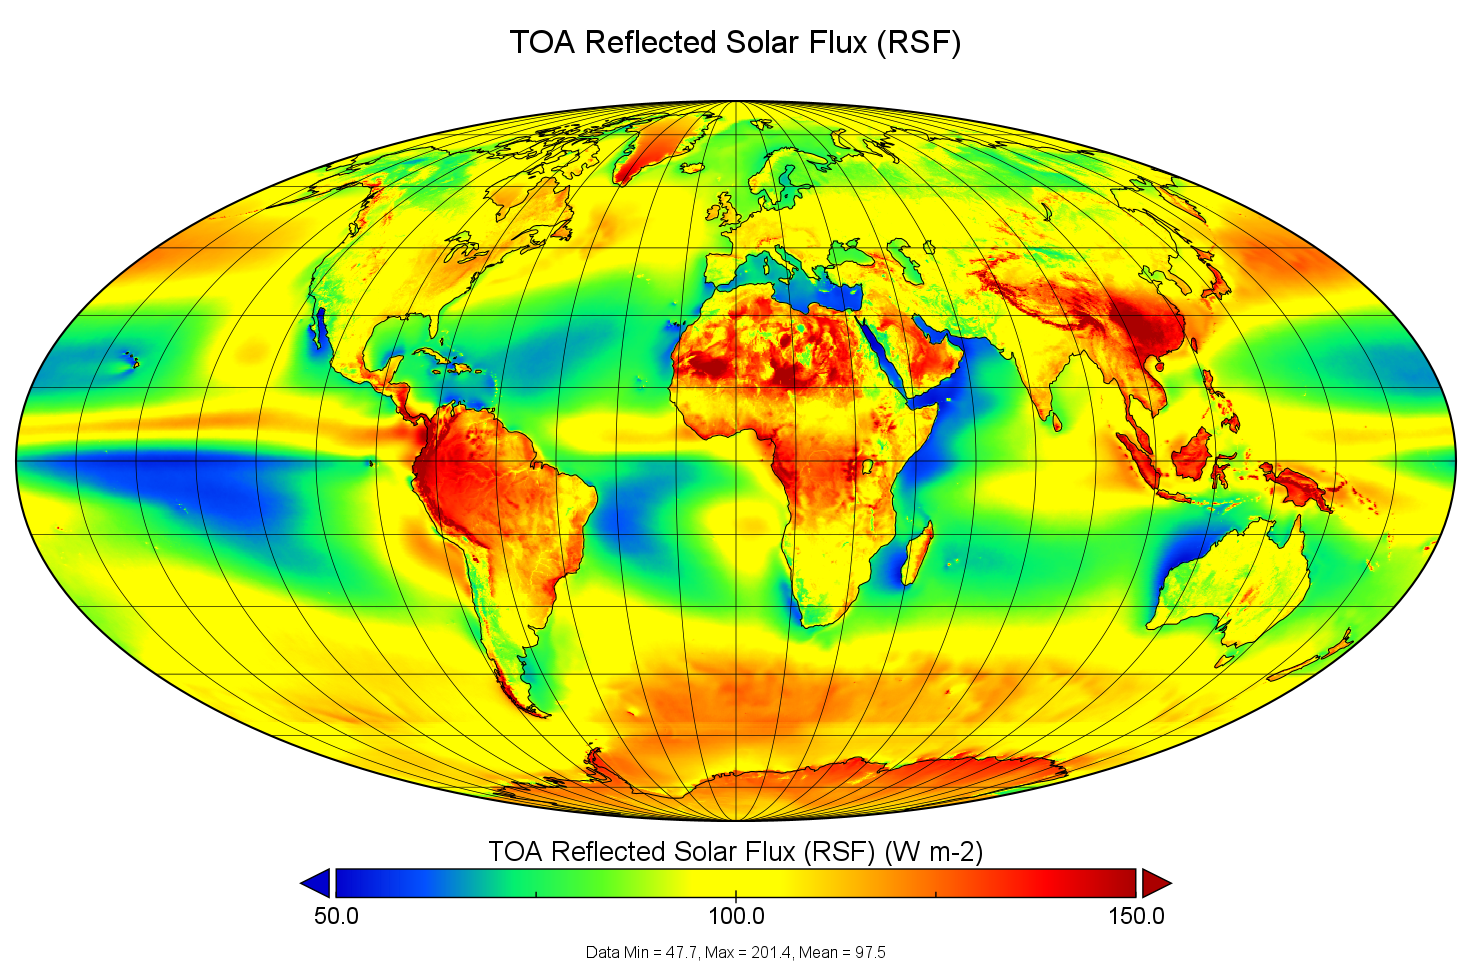 Op deze wereldkaart wordt de hoevelheid warmte die de aarde uitstraalt aan de top van de atmosfeer getoond op basis van de verzamelde metingen in de CLARA-A3 databank.